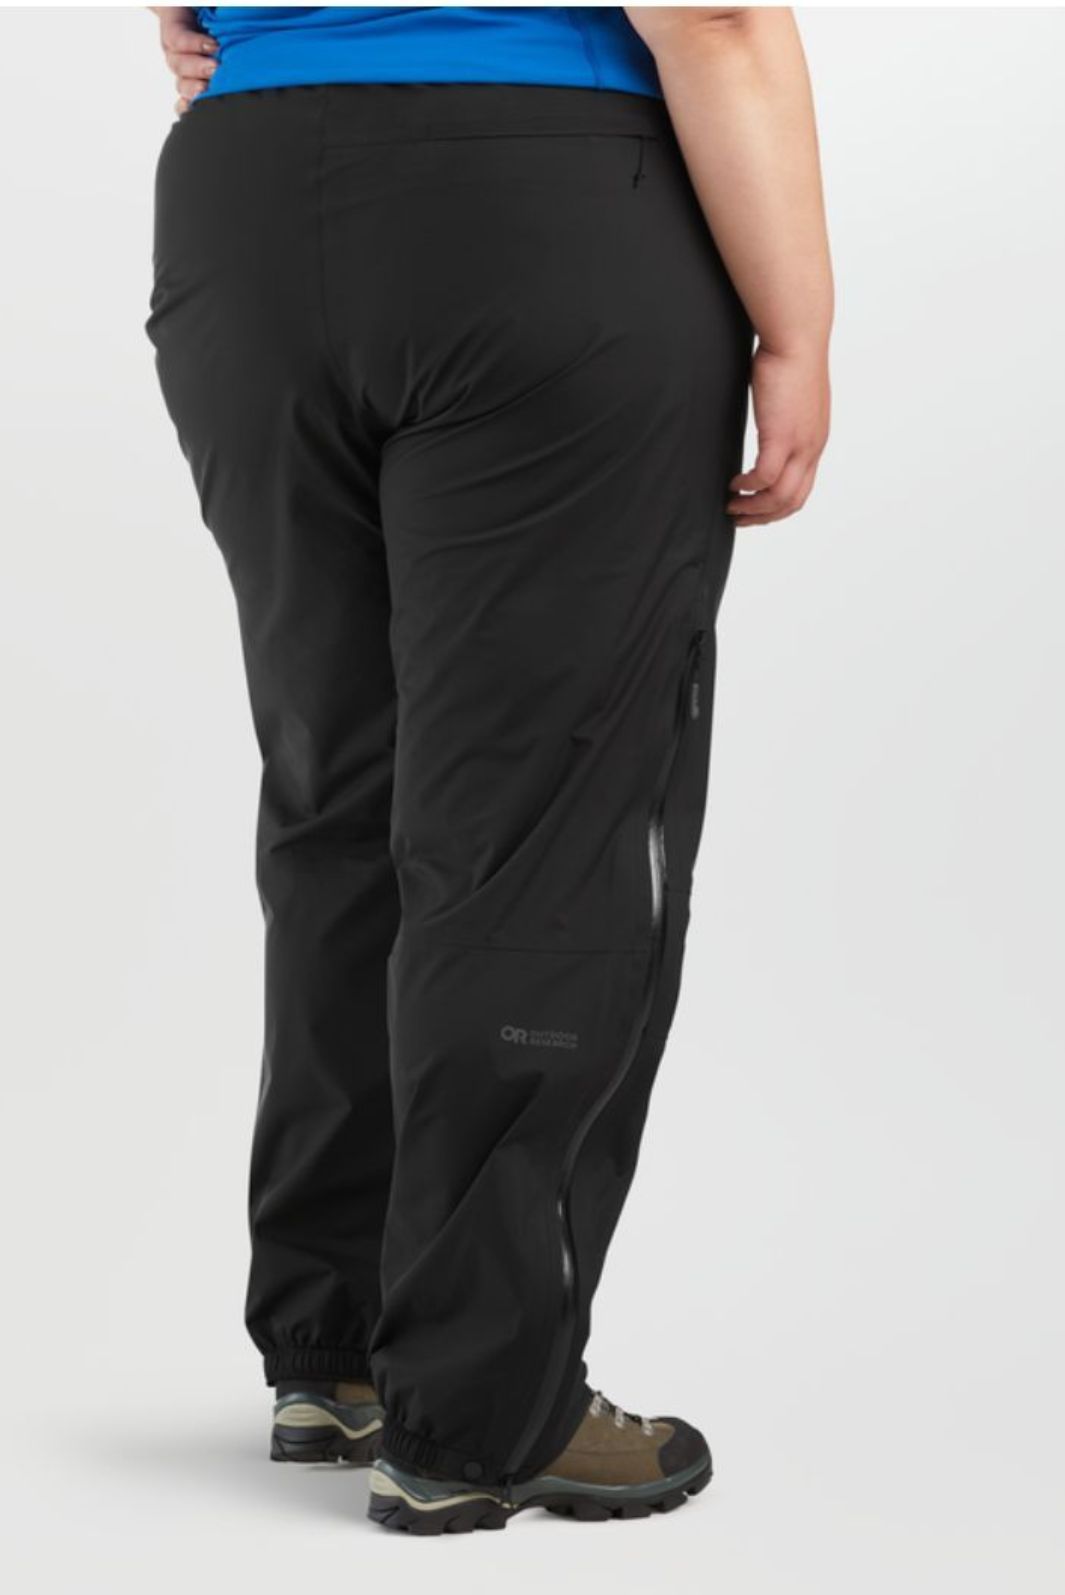 Pantalon de Pluie Aspire Taille Plus d'Outdoor Research